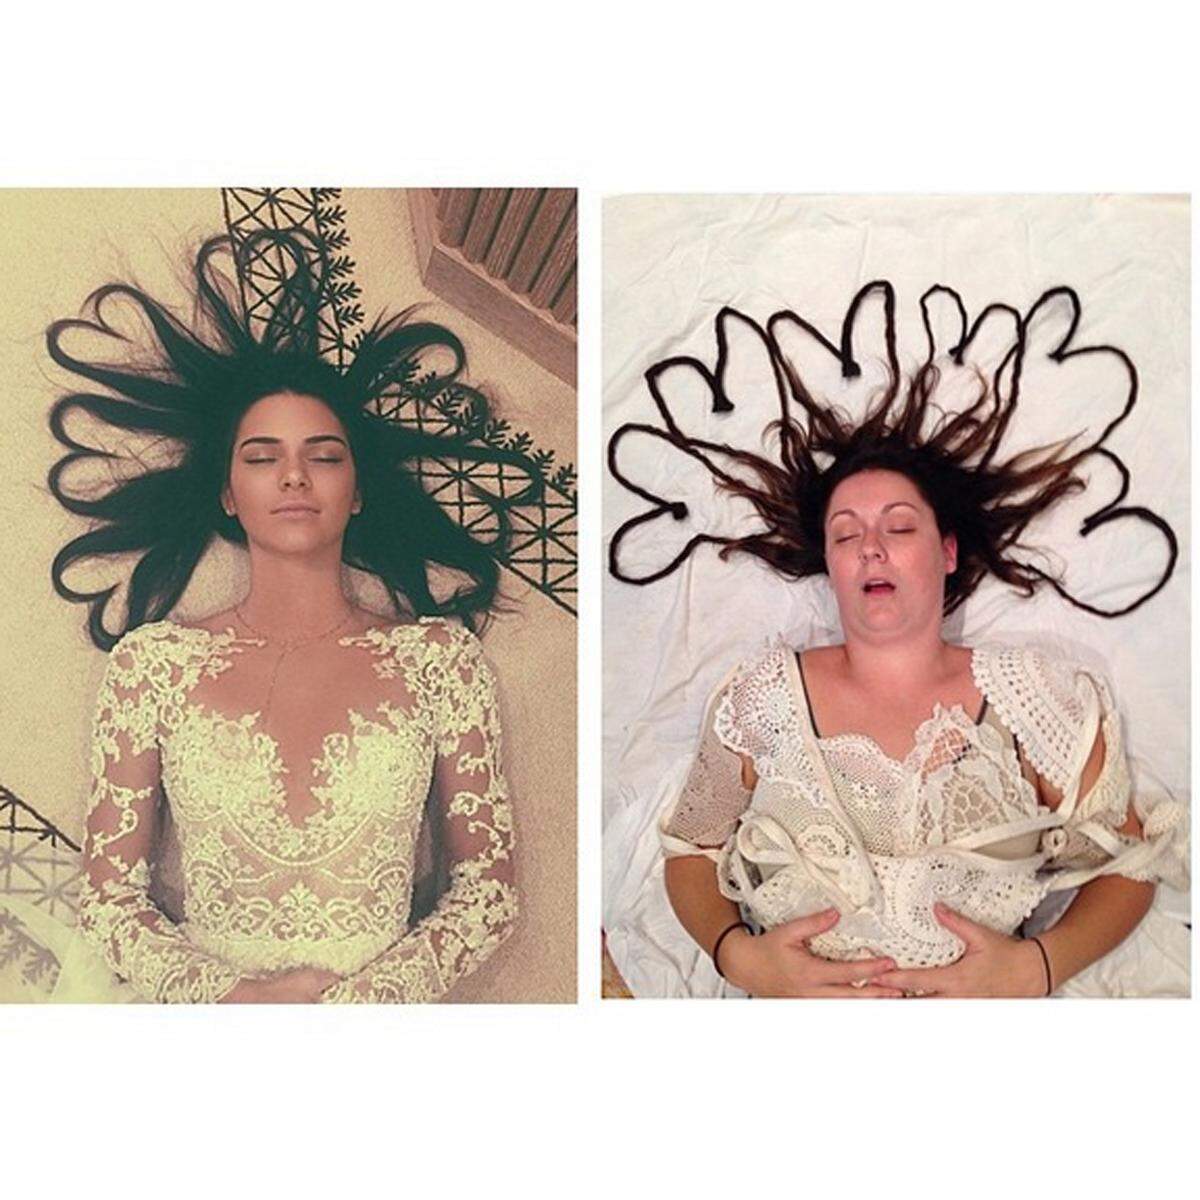 Dieses Bild von Kendall Jenner knackte einige Rekorde auf Instagram, Celeste Barber musste ihre Mähne verlängern.